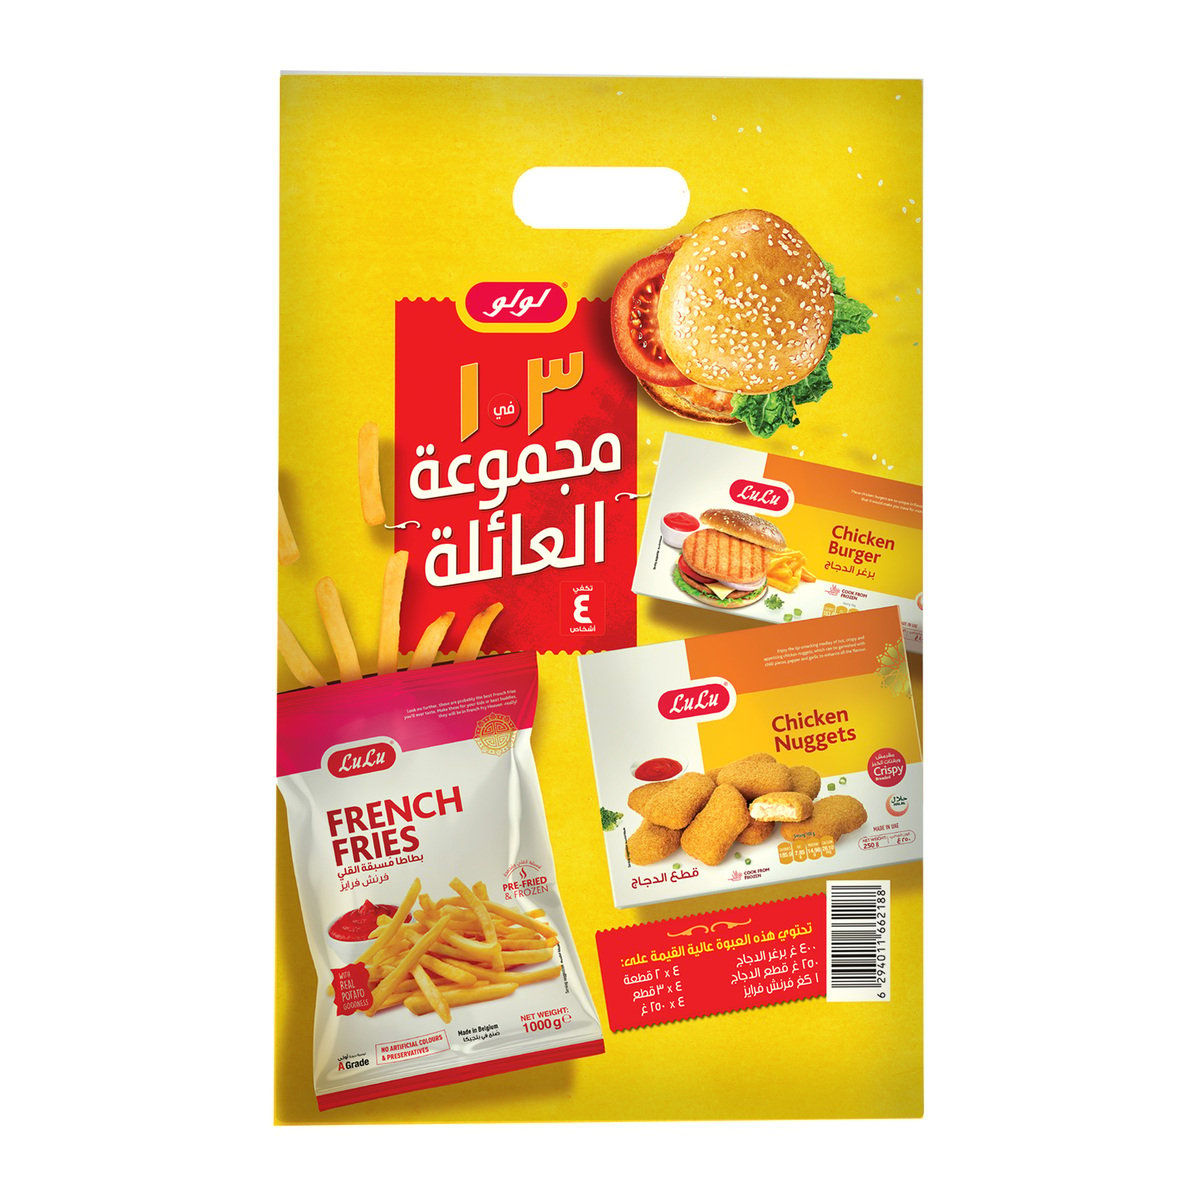 LuLu Chicken Burger 400 g + Chicken Nuggets 250 g + French Fries 1 kg